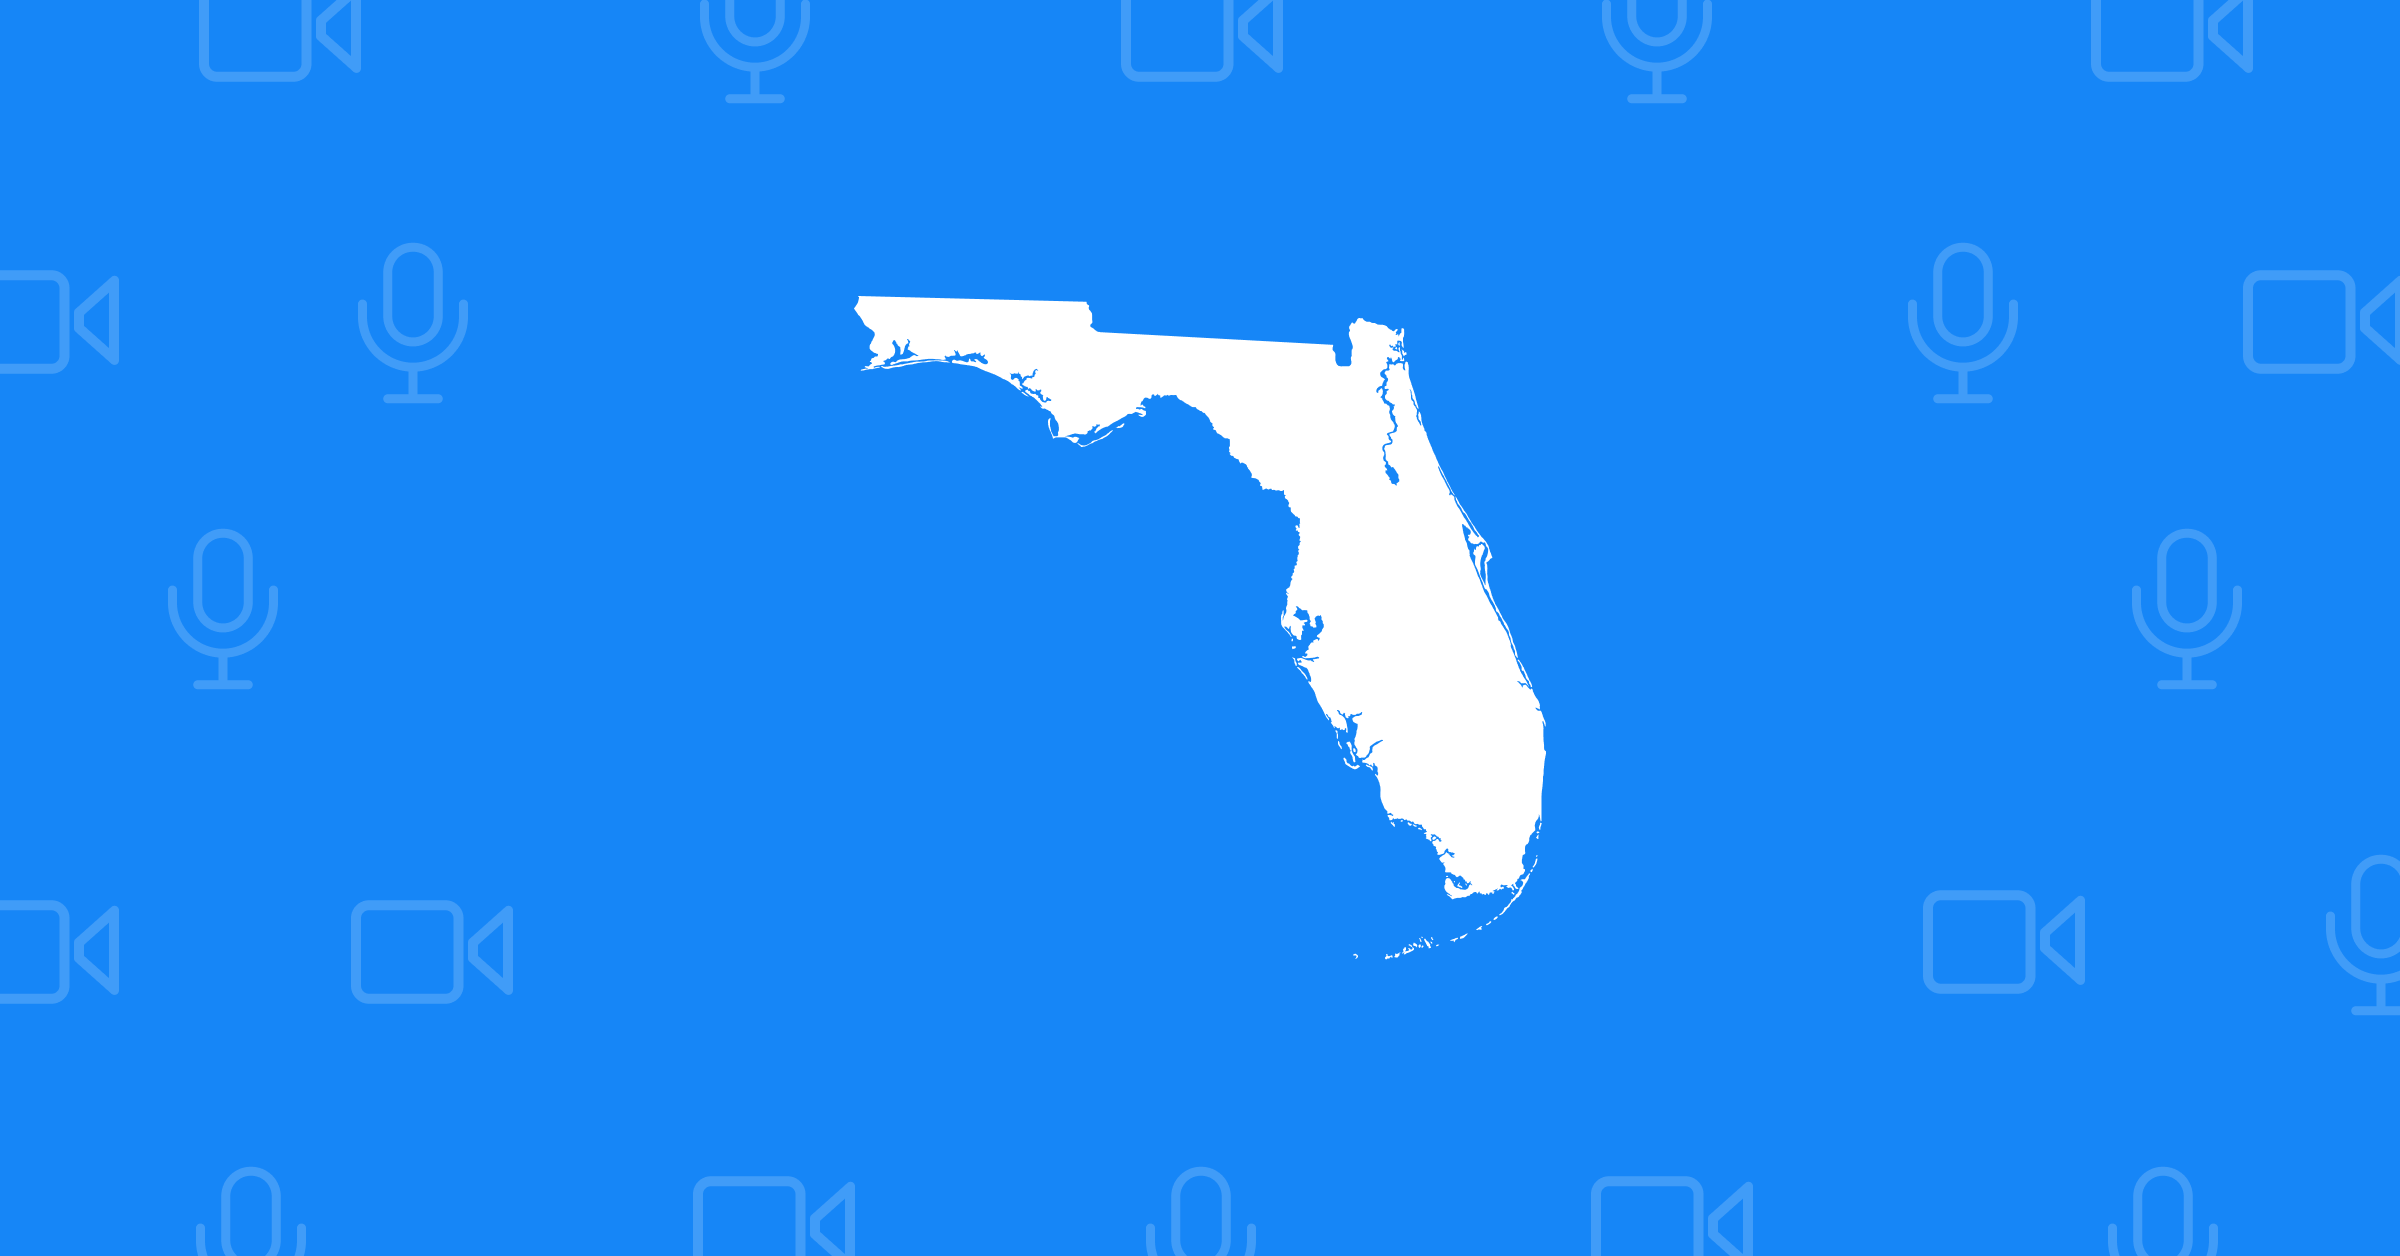 Healthcare Conferences - Florida - WegoPro